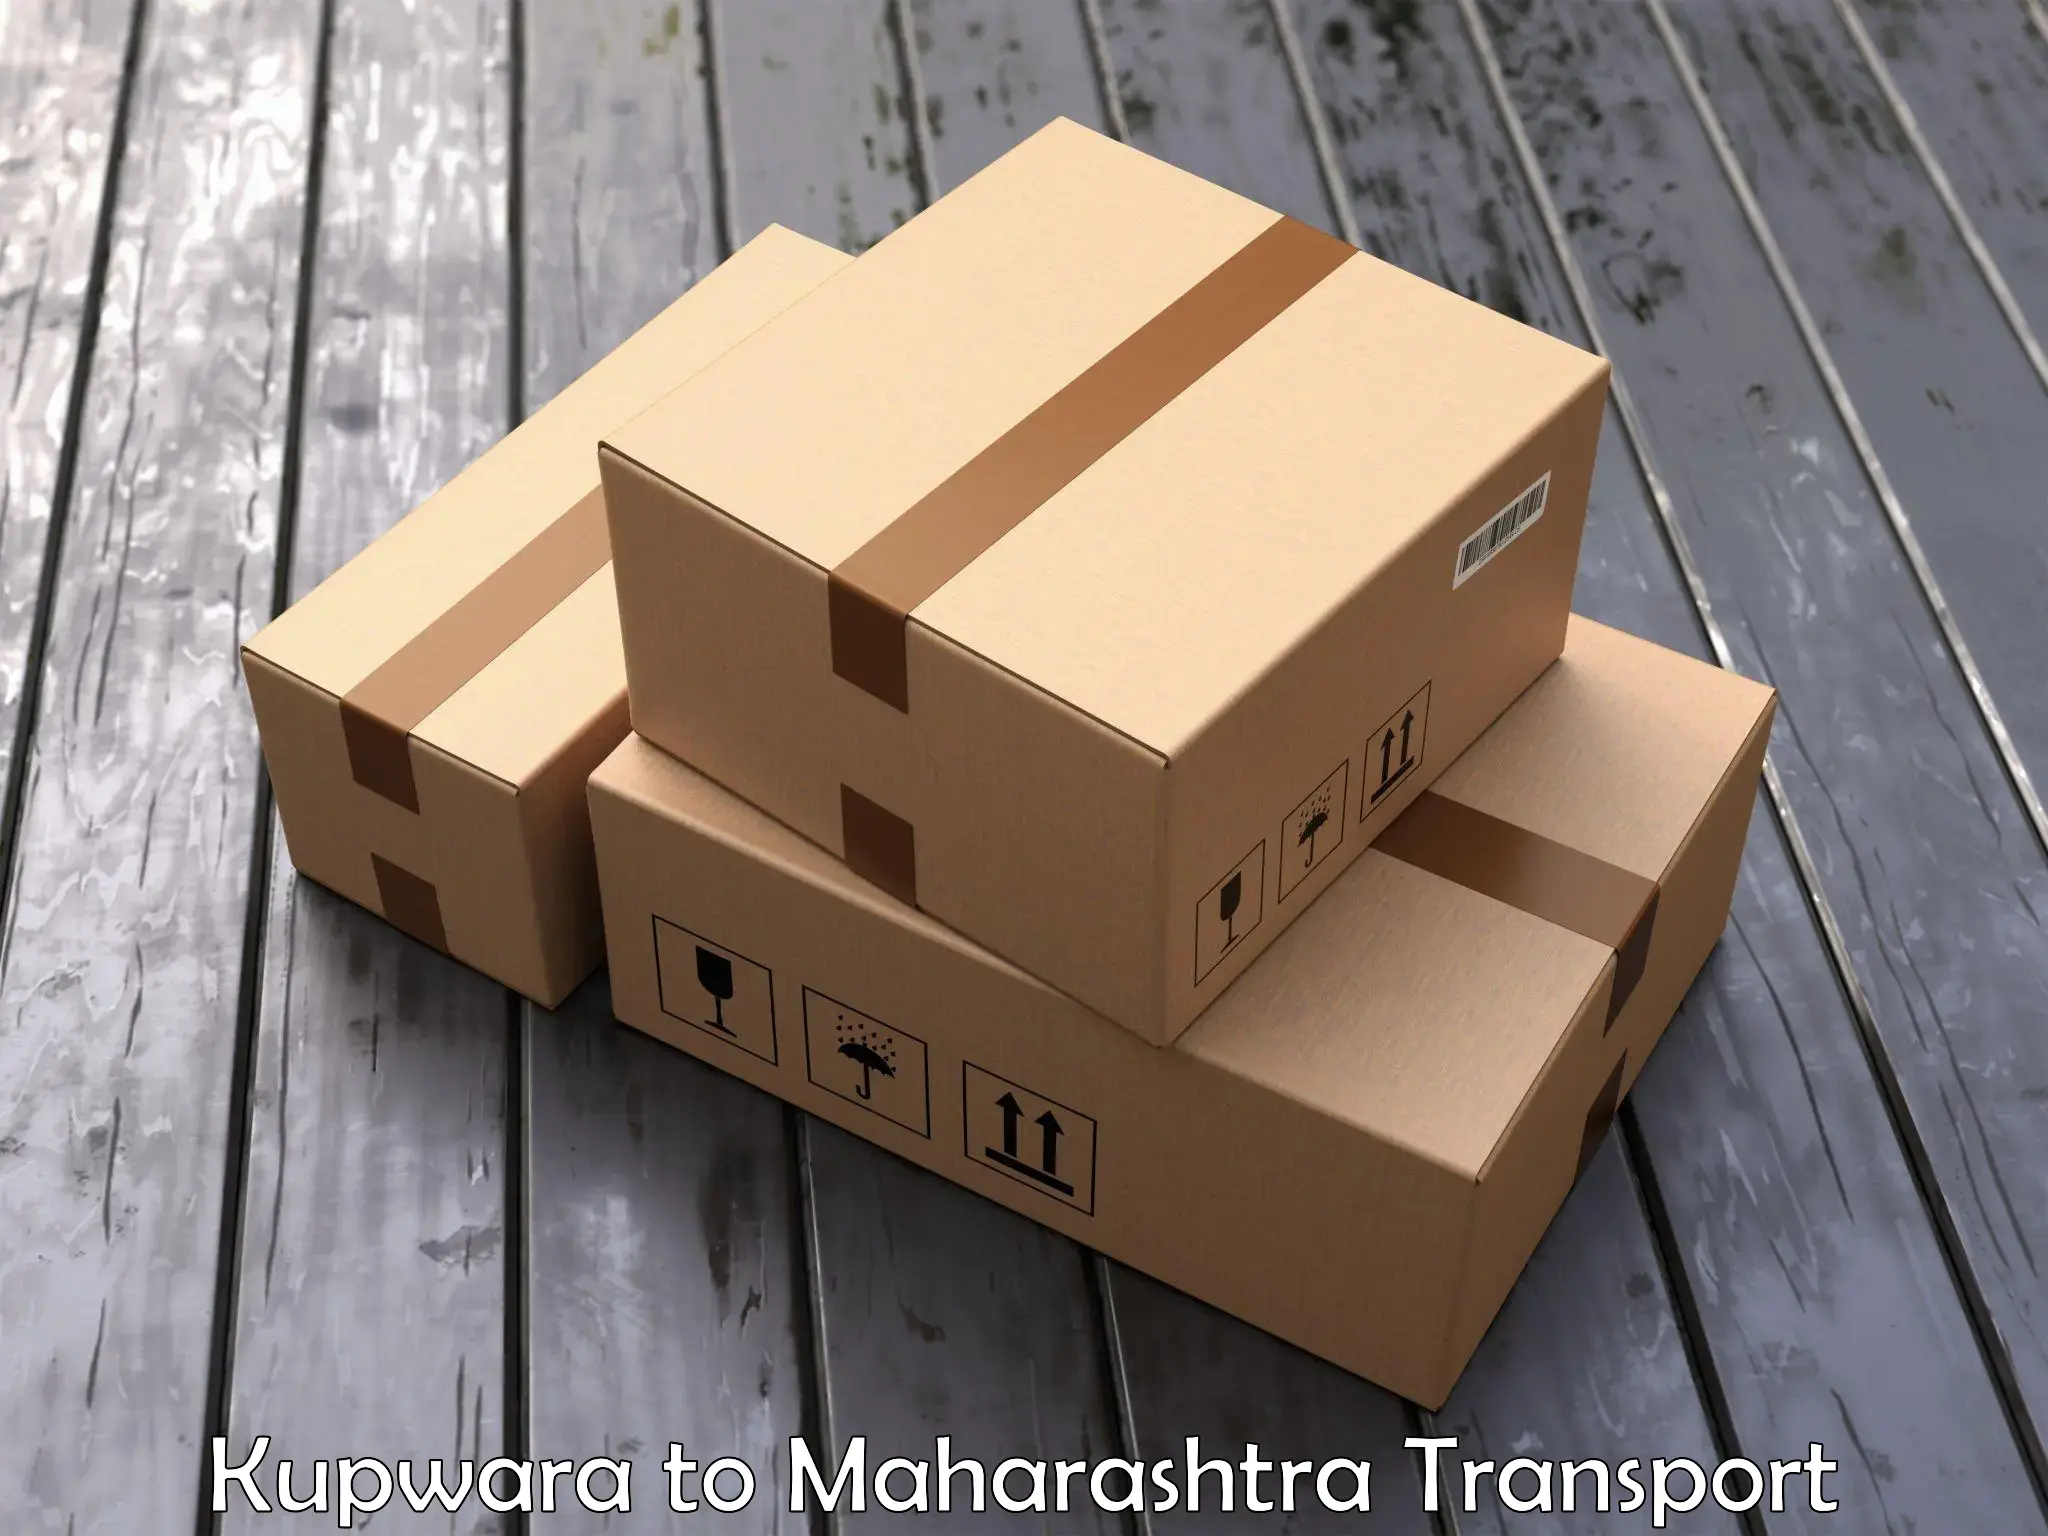 Transport in sharing in Kupwara to Mantha